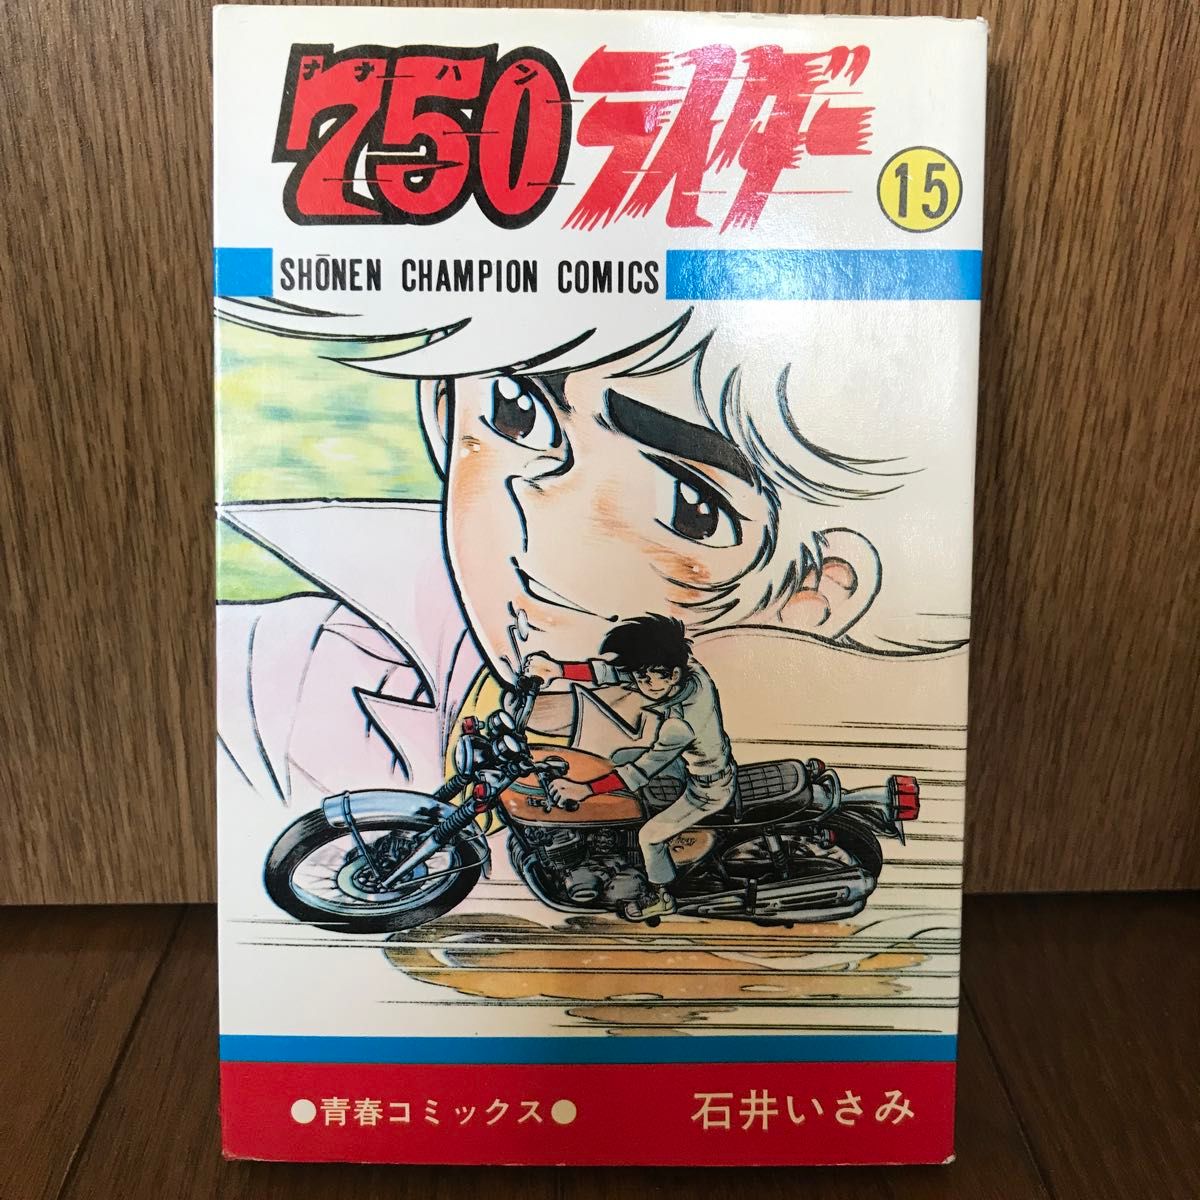 (コミック) 750ライダー 15  石井いさみ   少年チャンピオンコミックス 初版